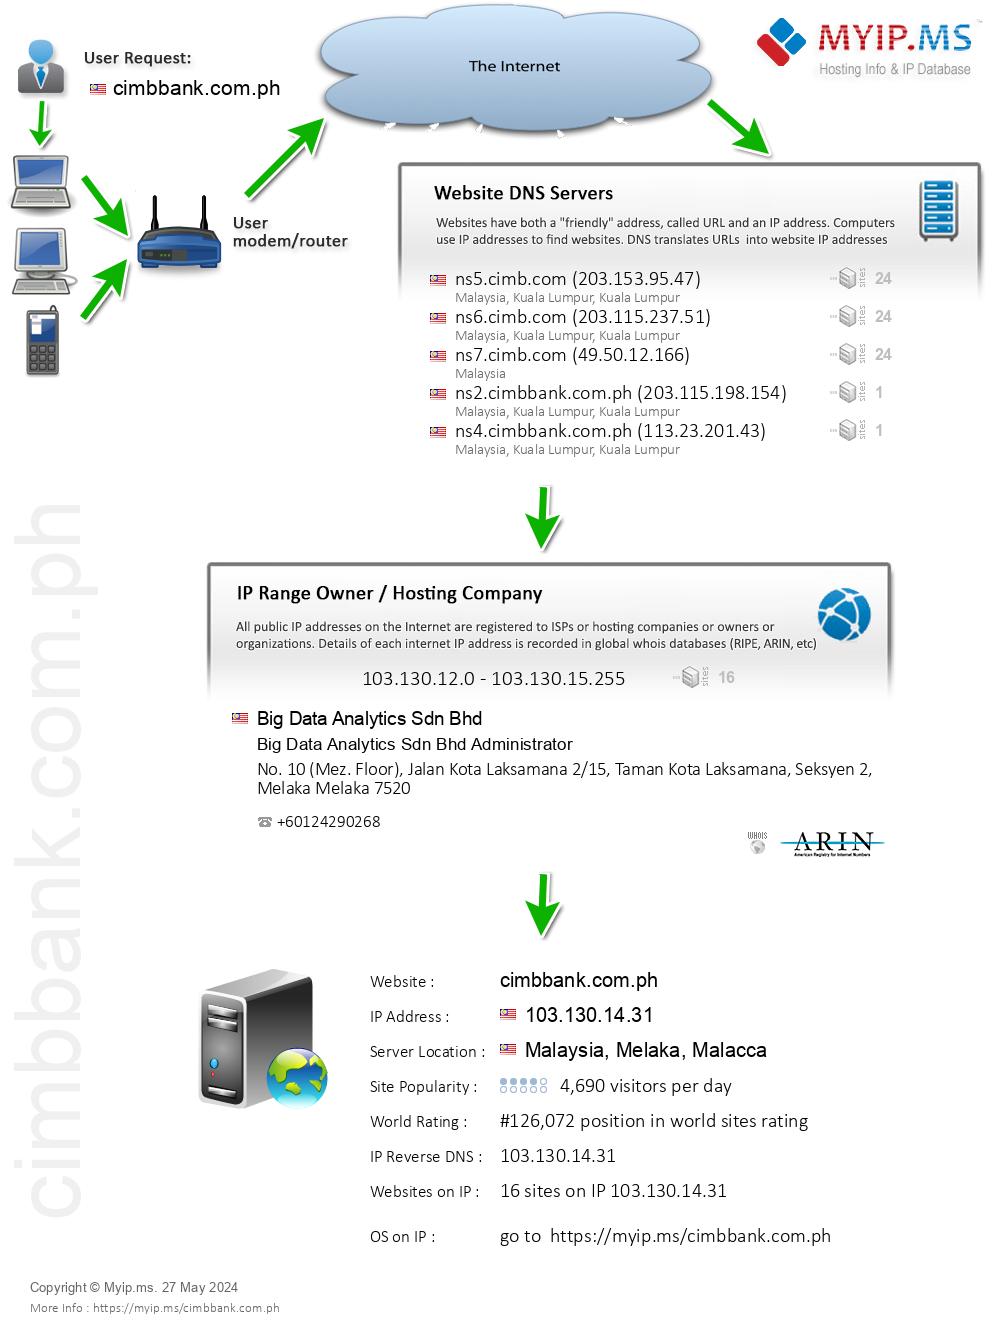 Cimbbank.com.ph - Website Hosting Visual IP Diagram